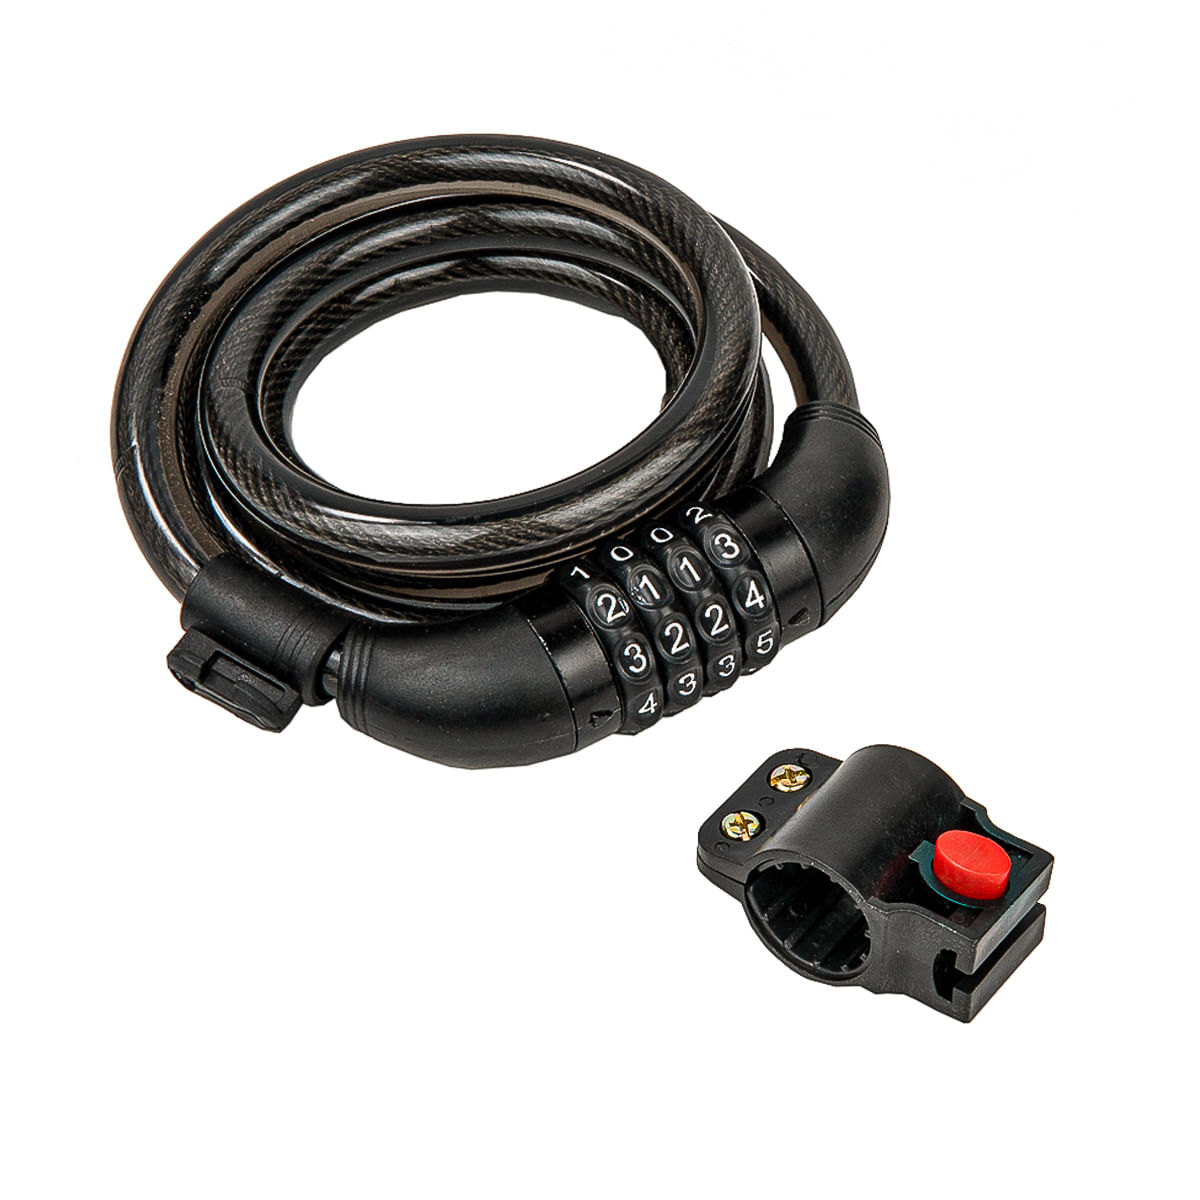 Cable con candado para bicicleta 50 mm - Promart